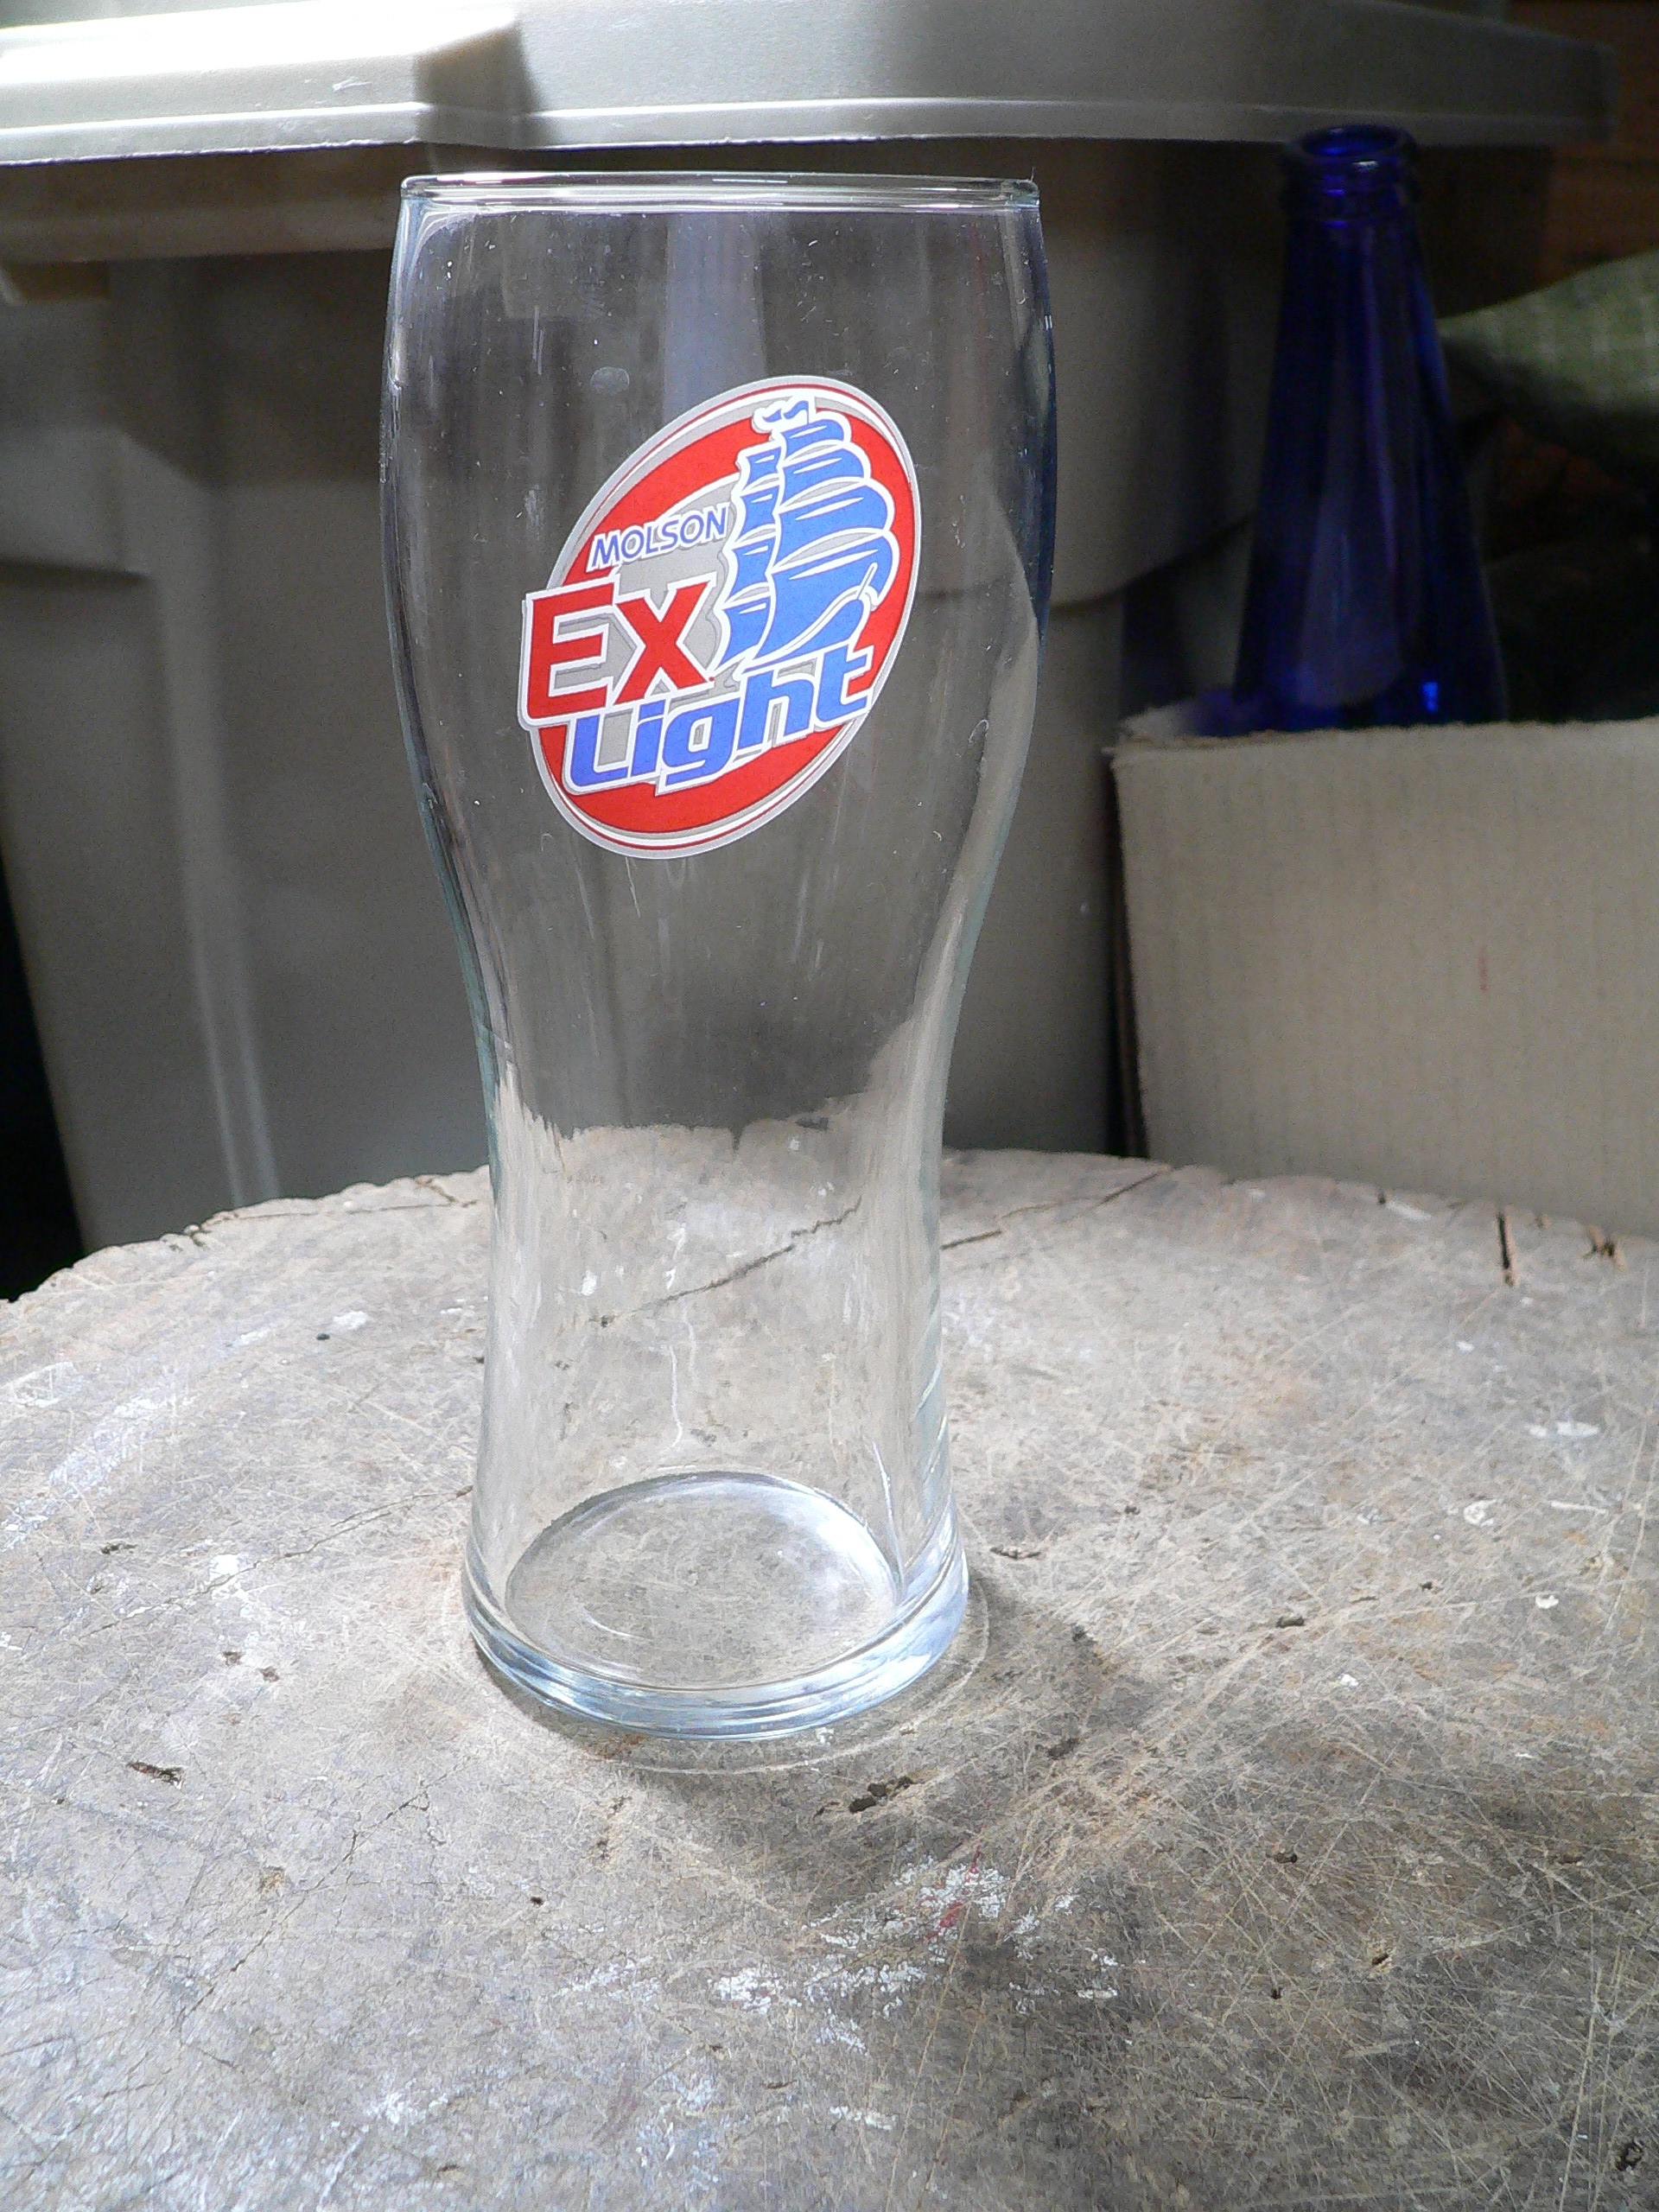 Verre bière Molson ex light # 8760.3